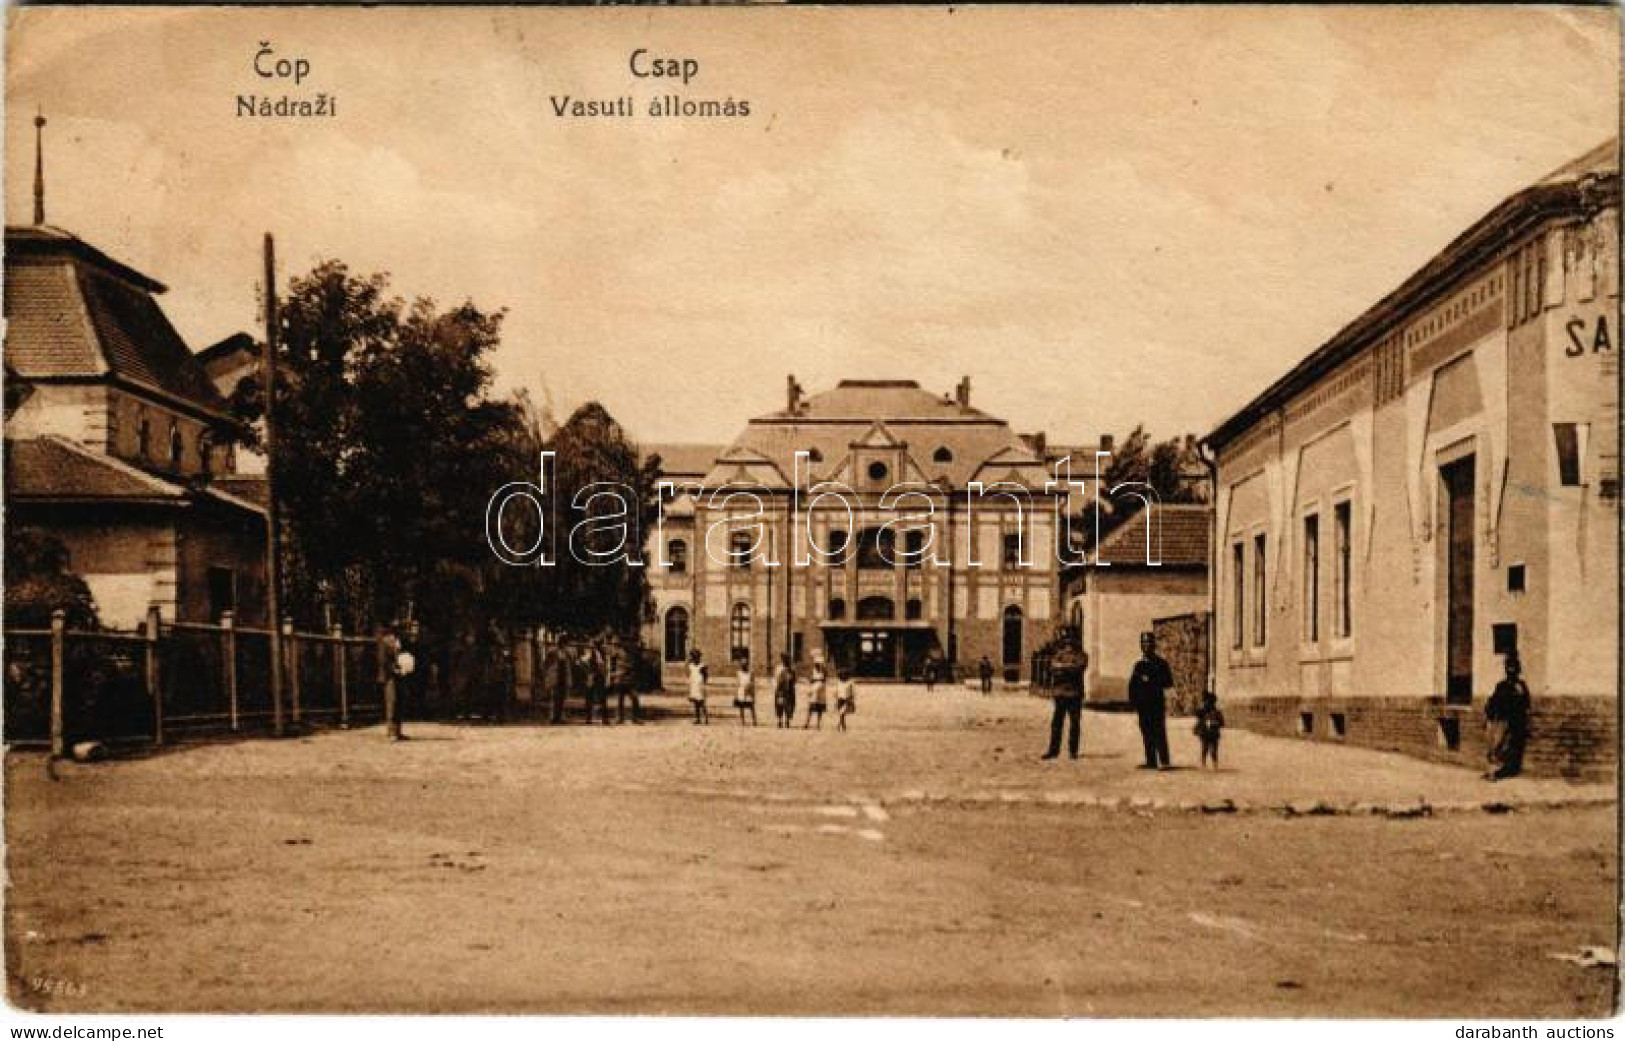 T2/T3 1922 Csap, Cop, Chop; Nádrazí / Vasútállomás / Railway Station (EK) - Non Classés